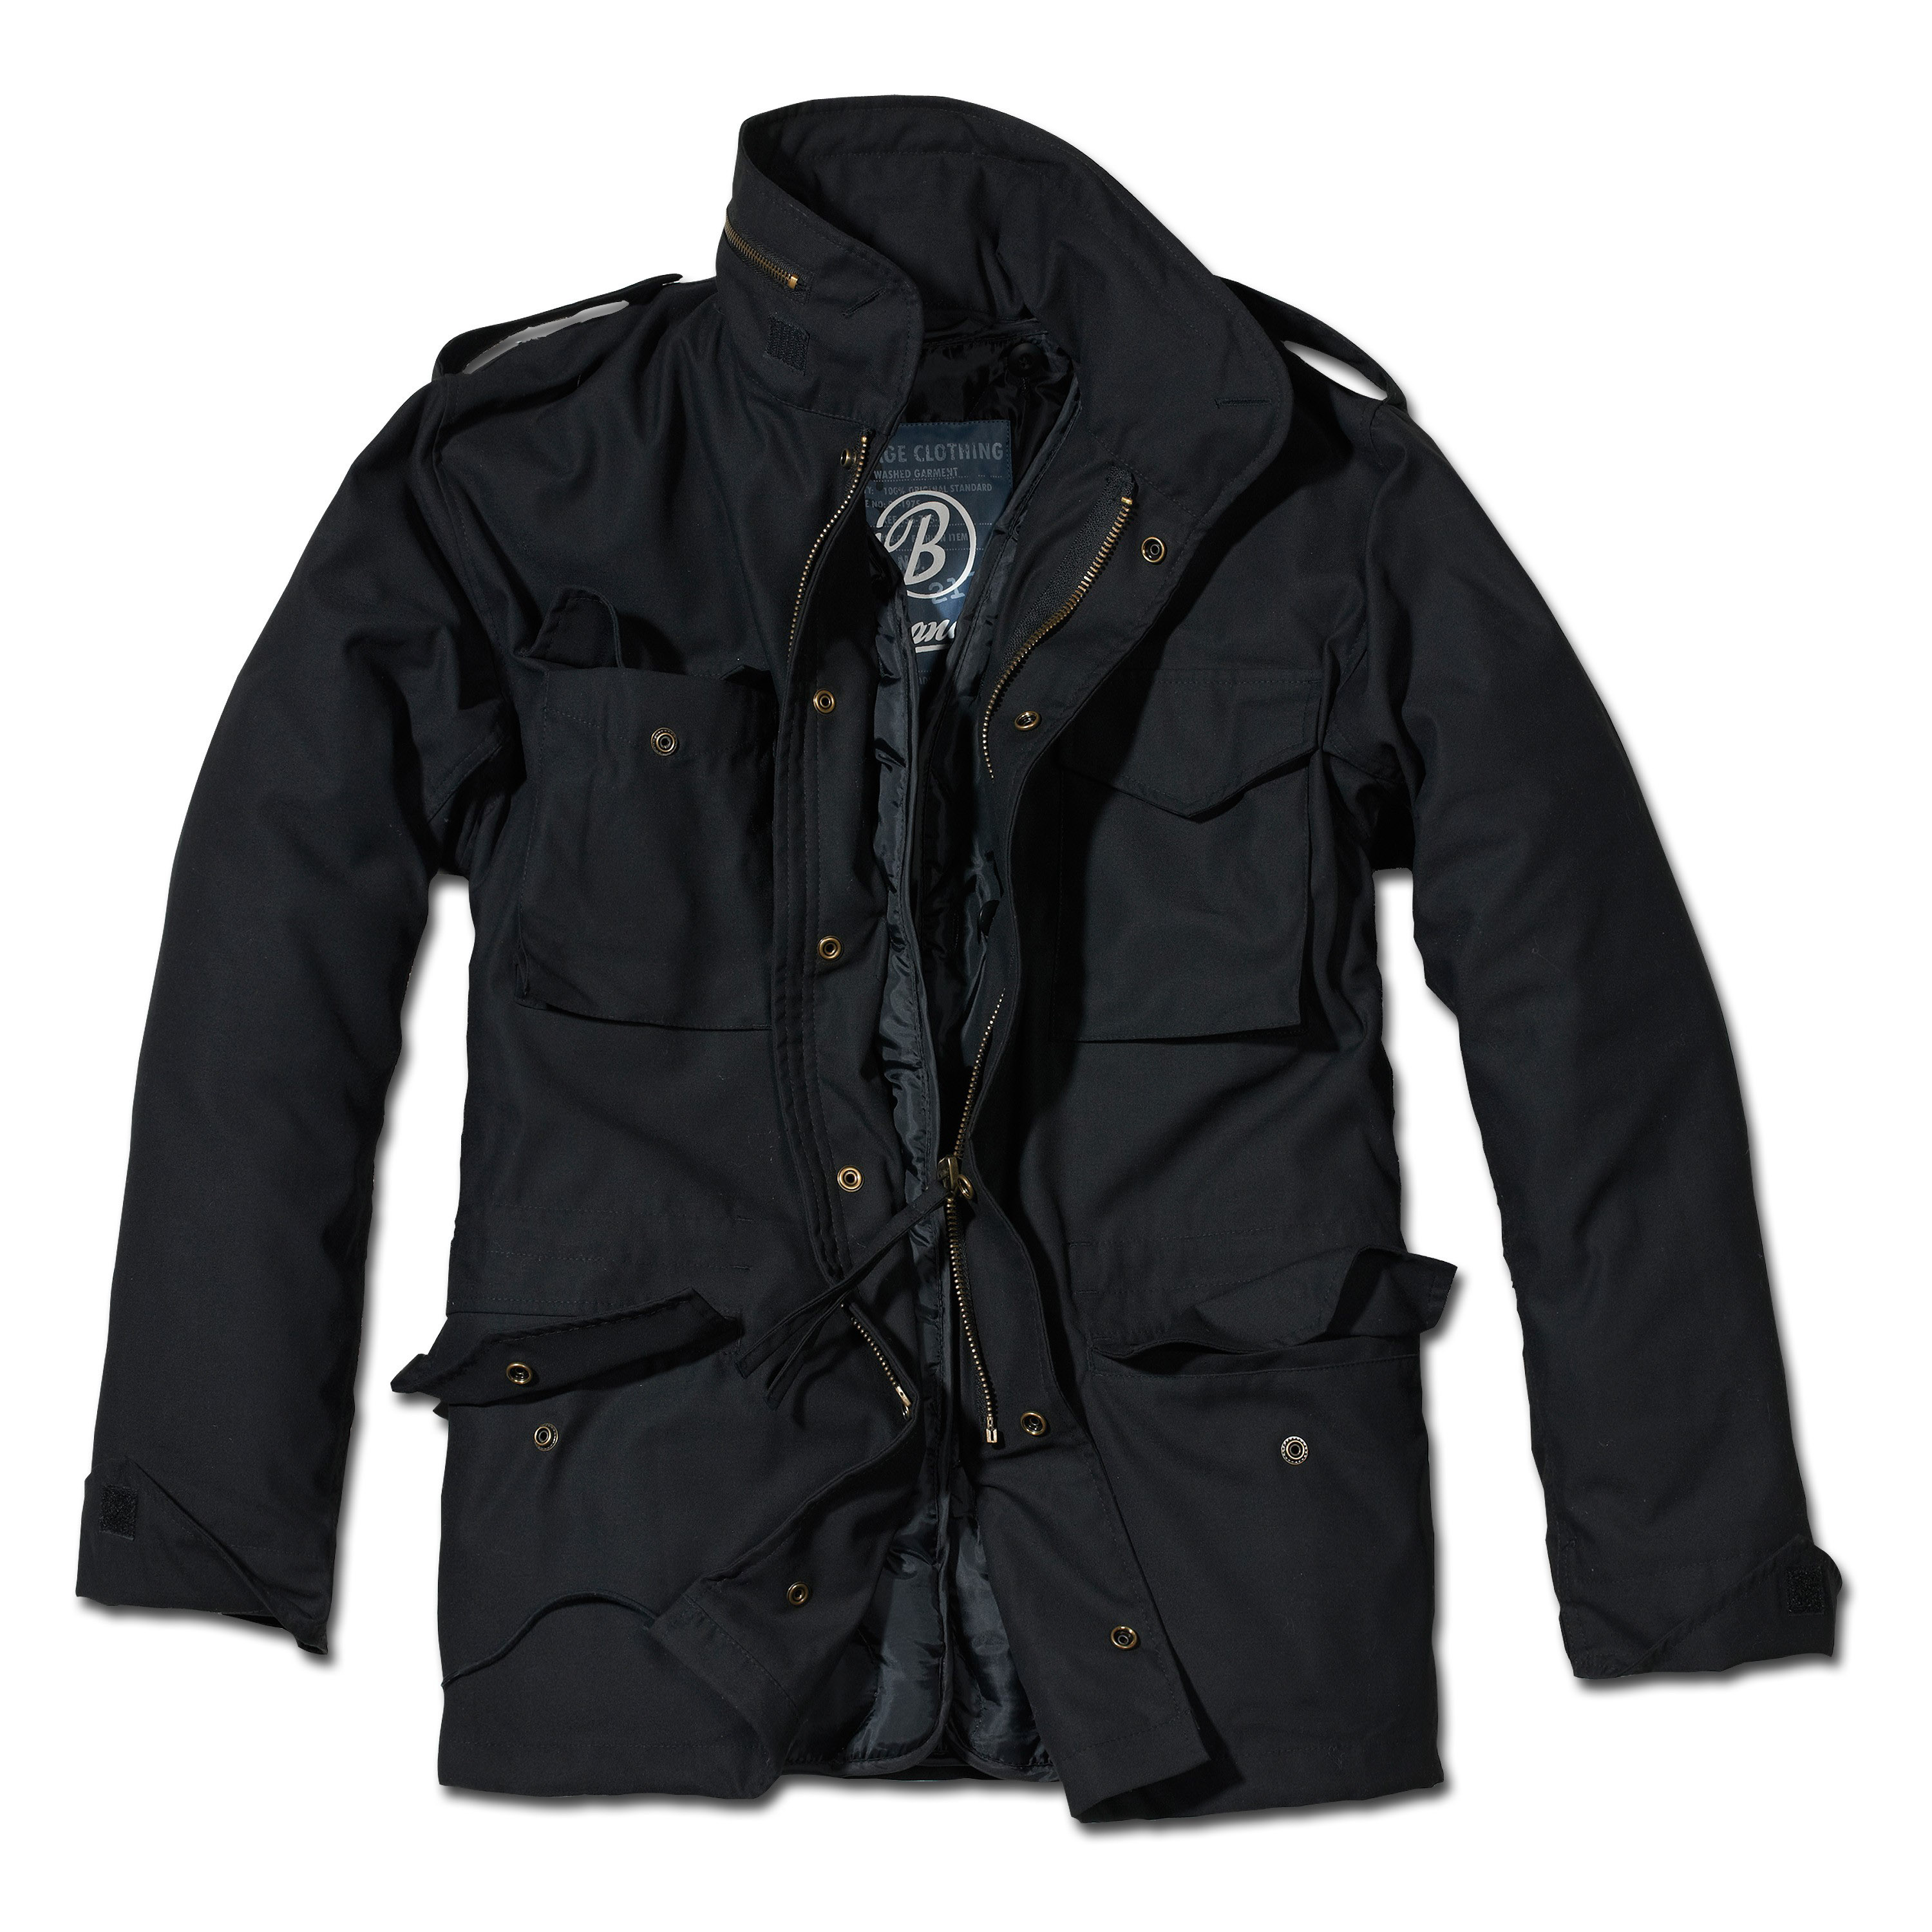 Куртки для мужчин в москве. Brandit m65. M65 Standard Brandit. Куртка m65 Standard Brandit Black. M-65 Classic Brandit.